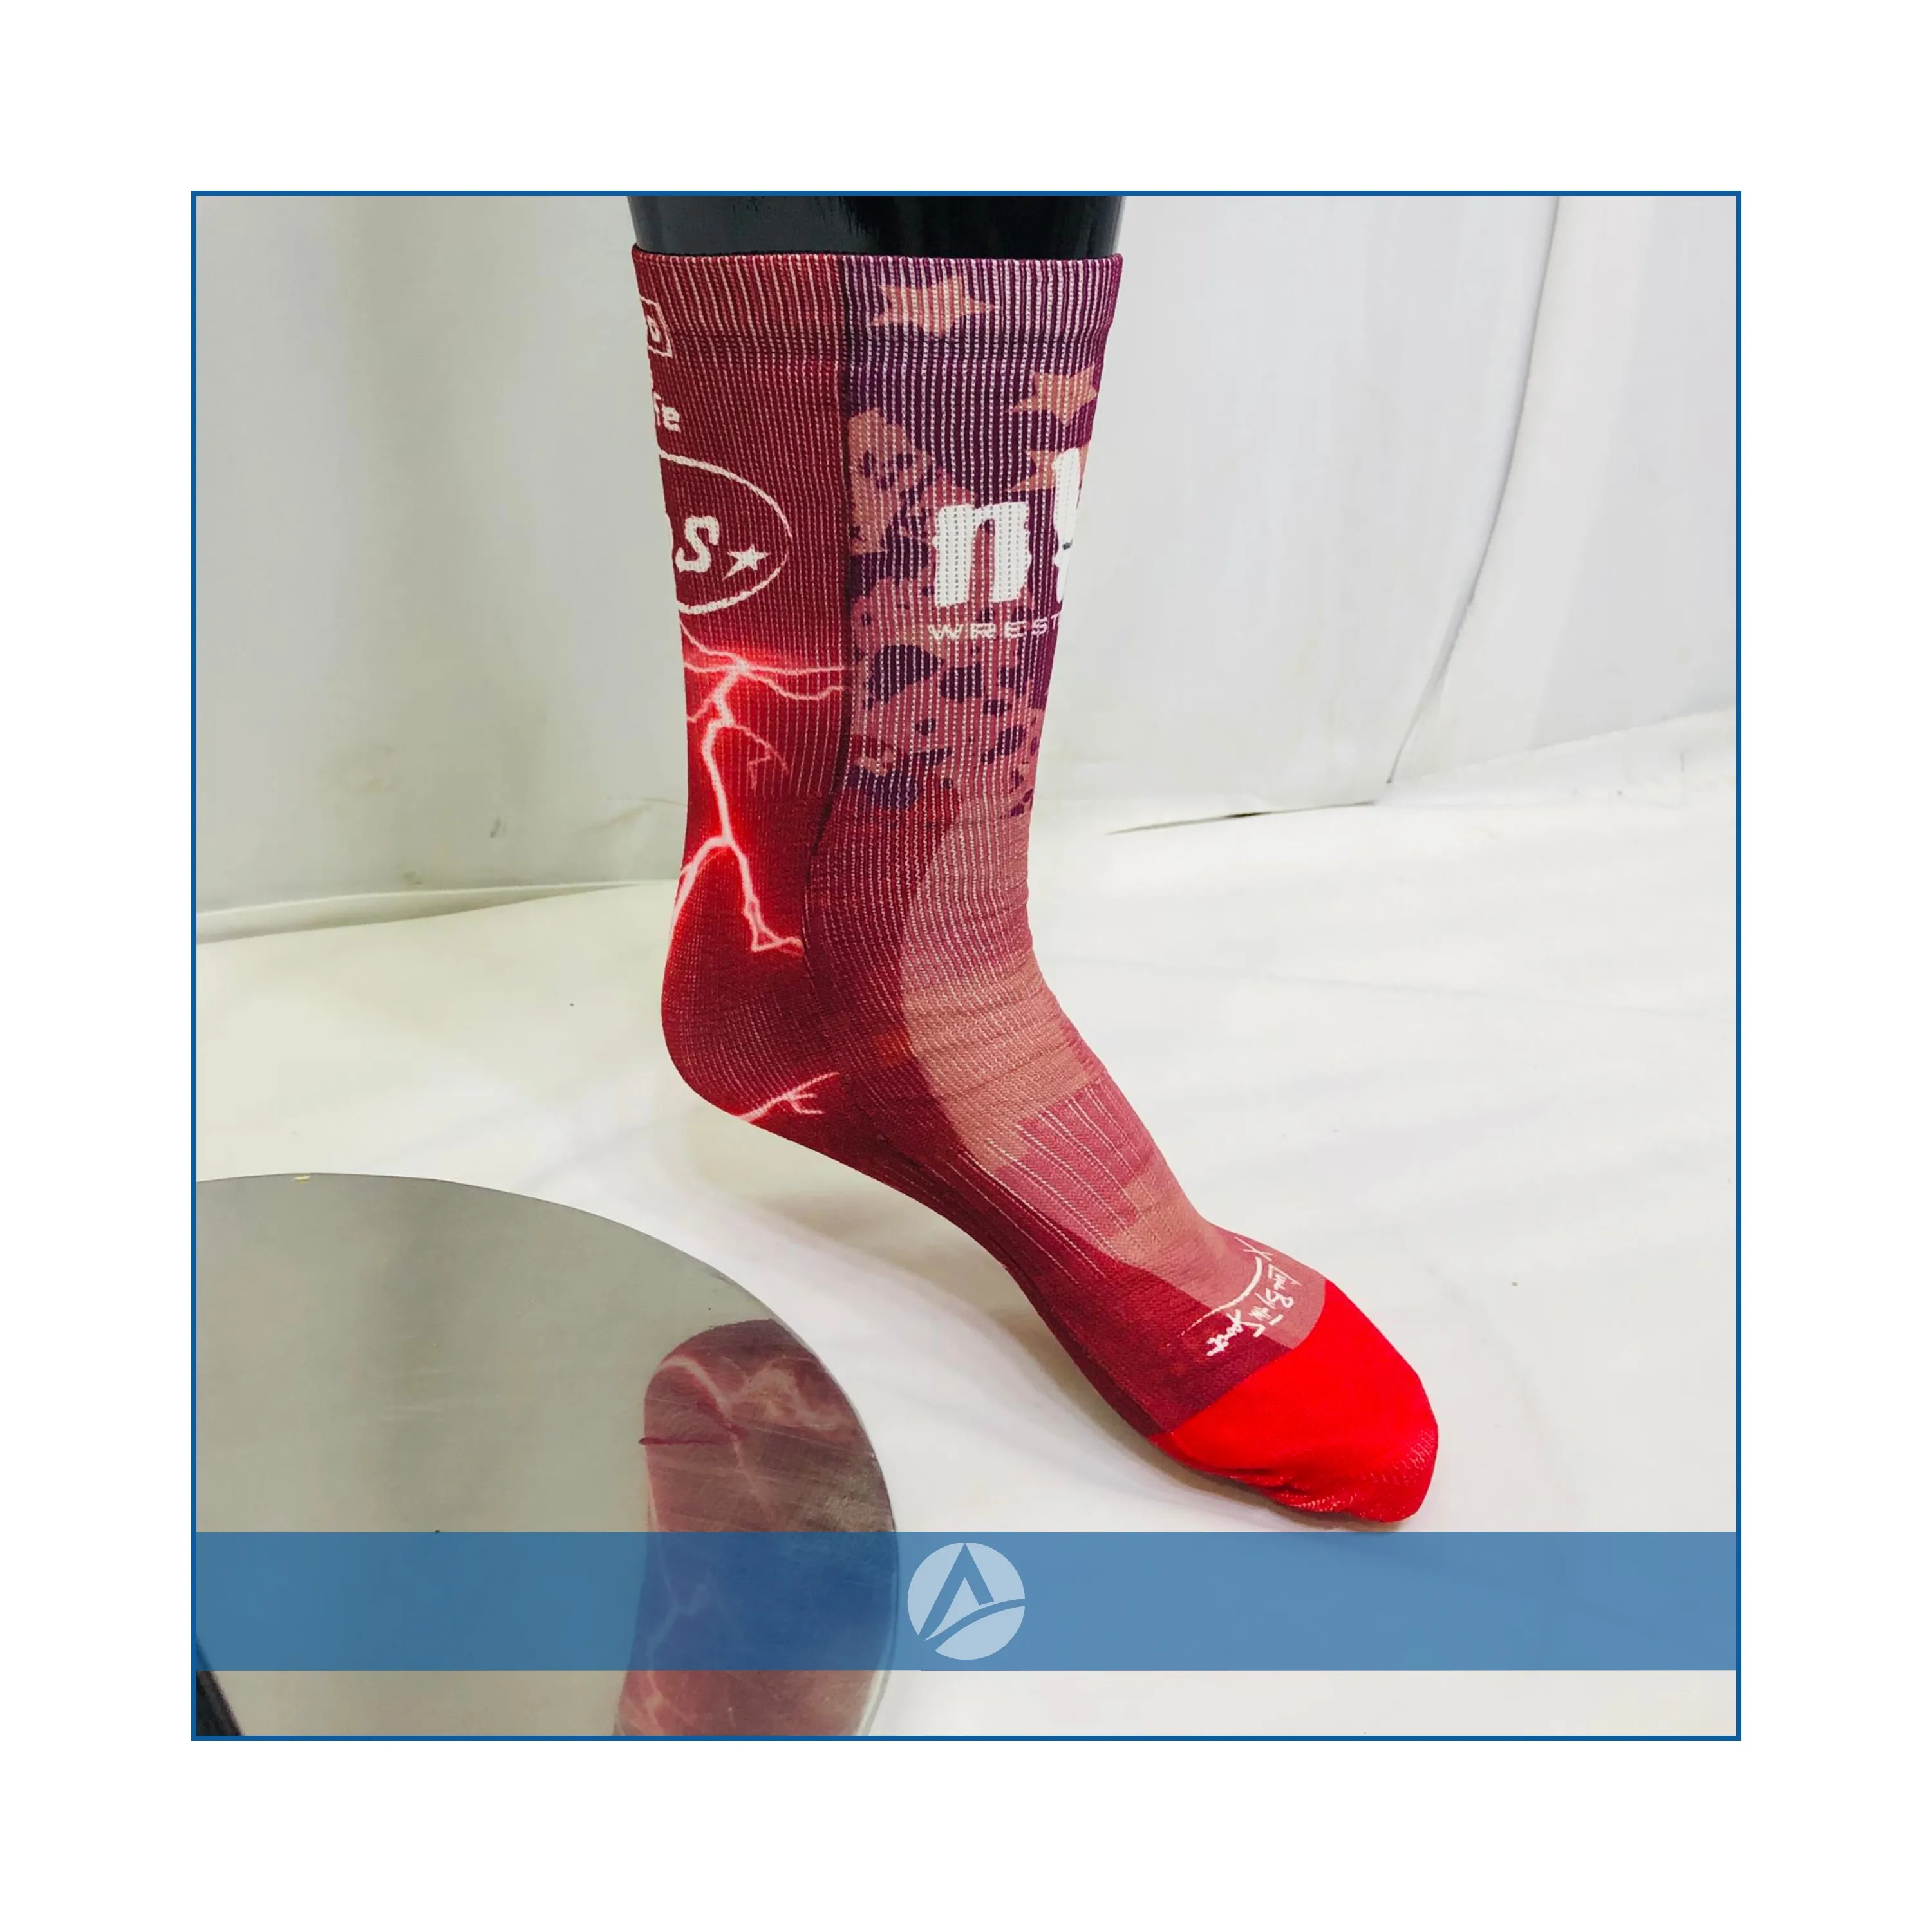 Ayaklarınızı kuru ve serin tutmaya ve karışım teknolojisi çoraplarını çalıştırmaya yardımcı olmak için özel havalandırma bölgesi ile OEM erkek çorabı